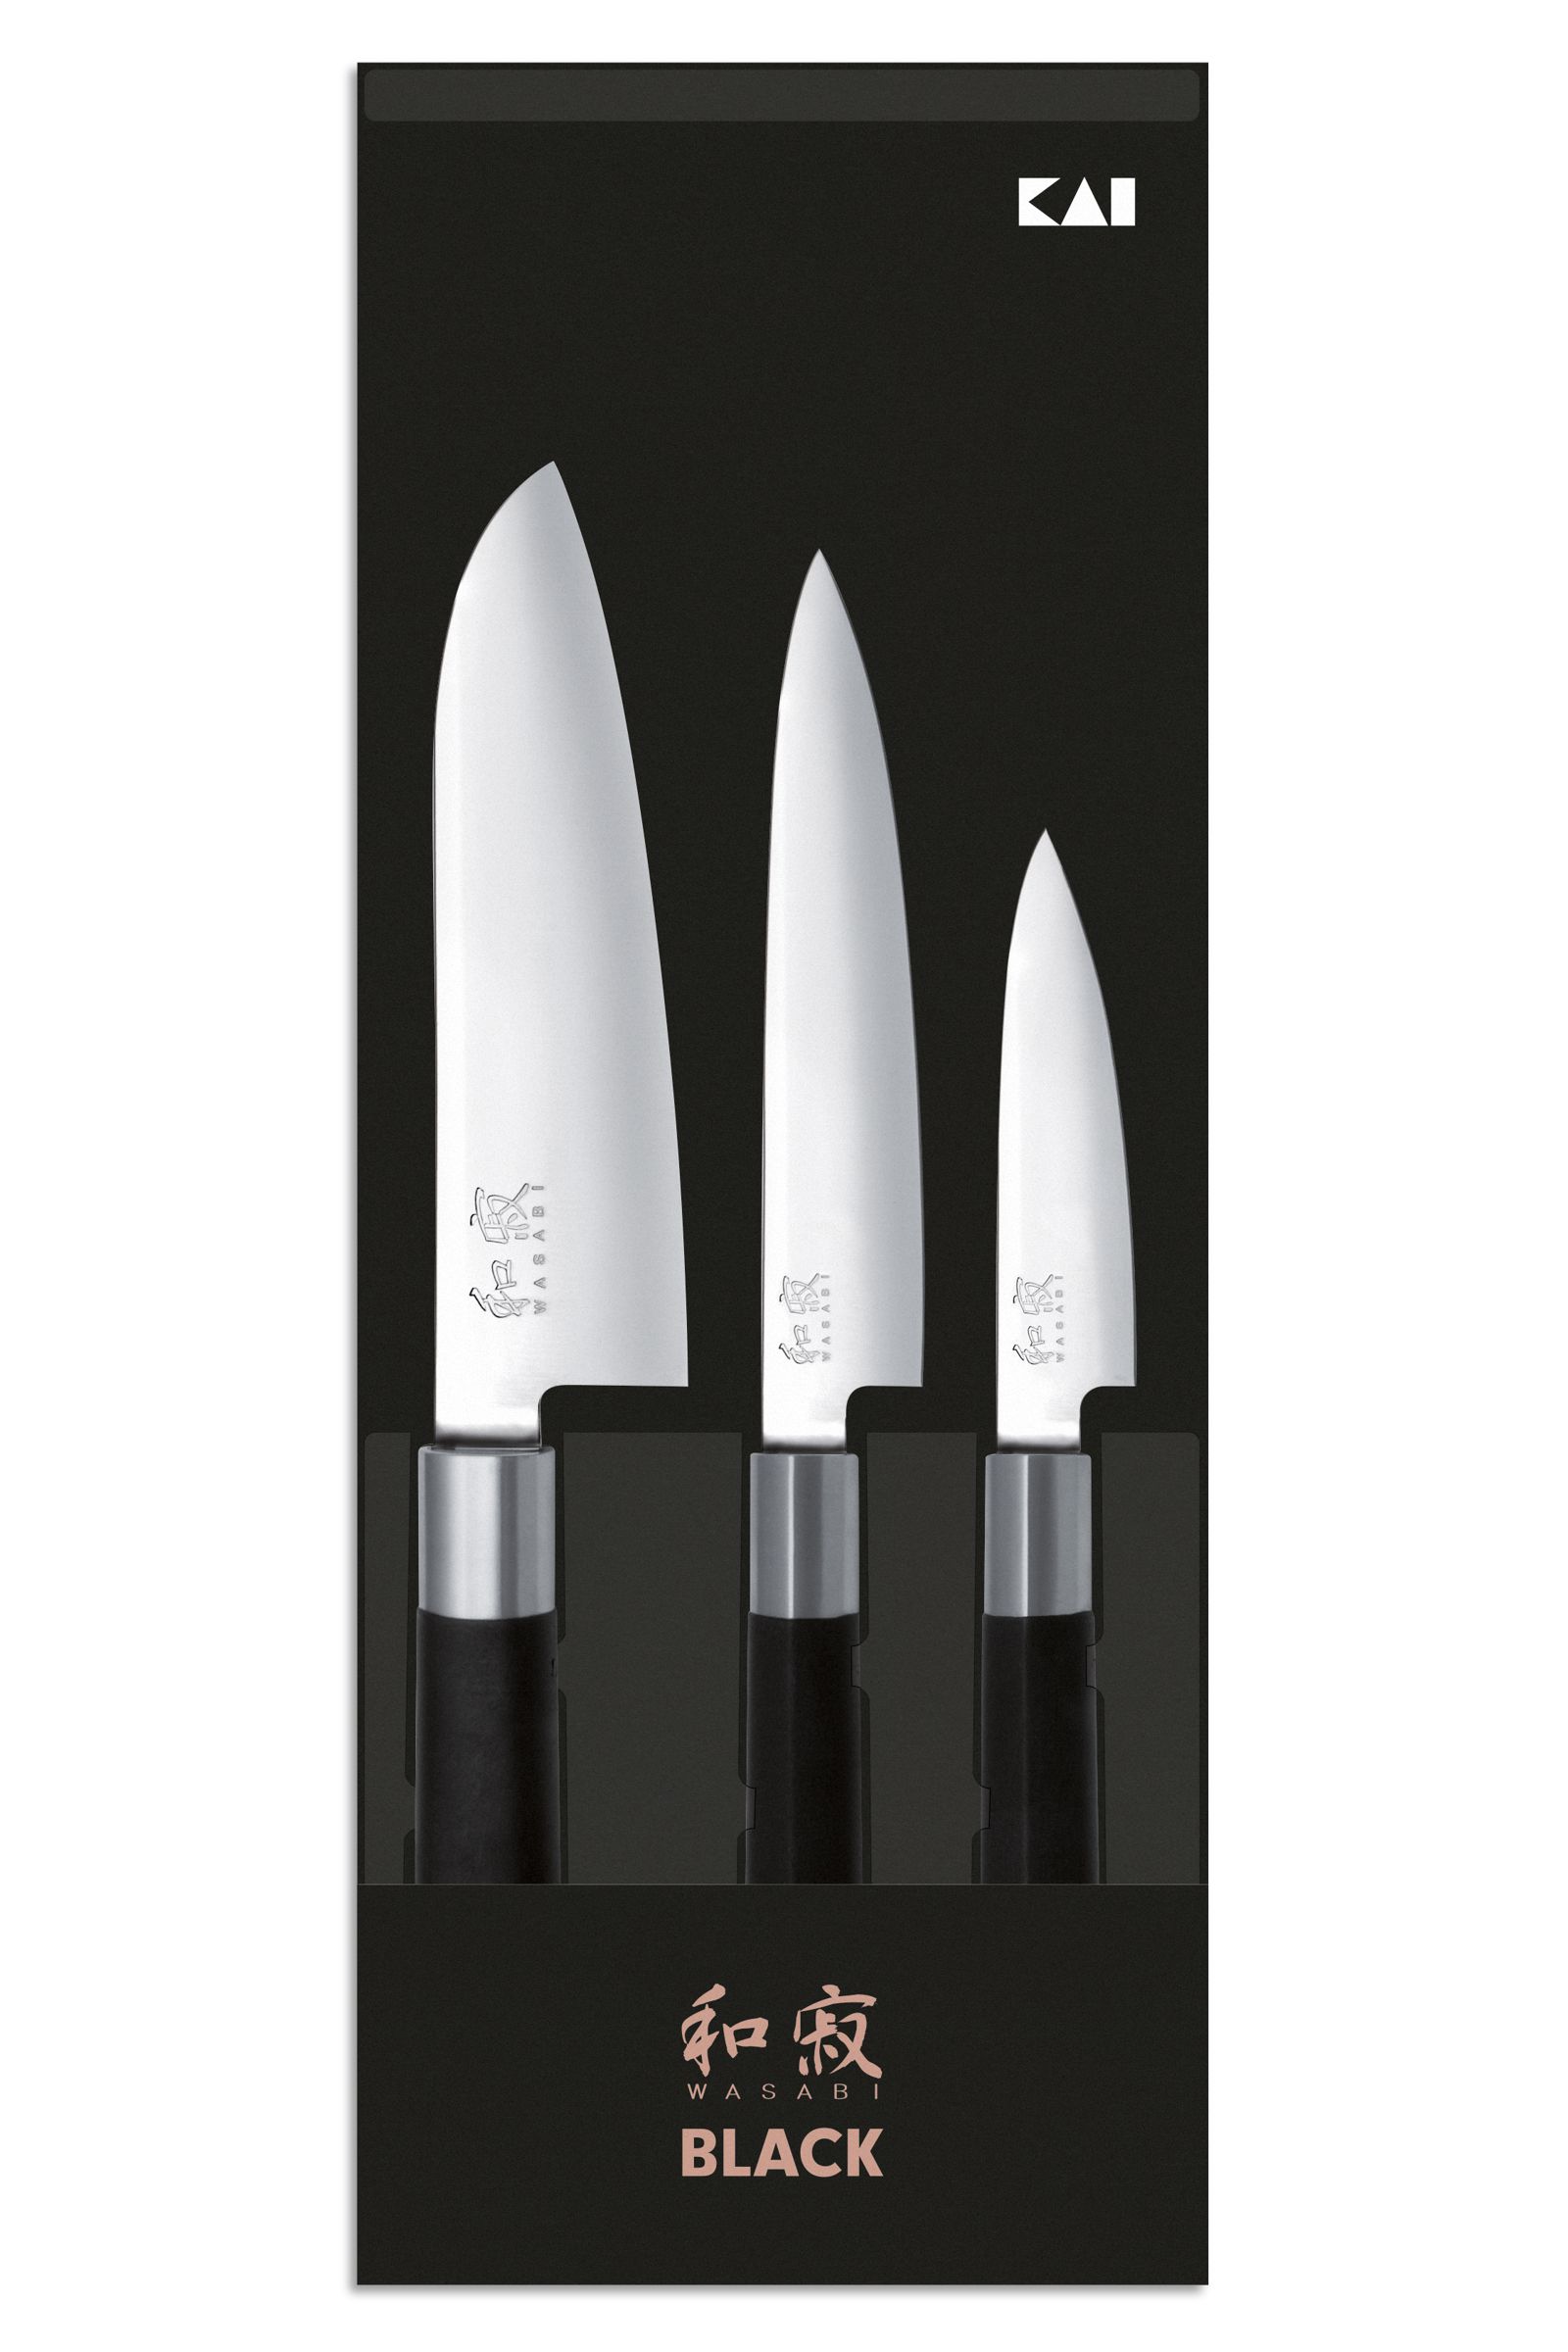 KAI Wasabi Black Messerset - 3-teilig - Santoku, Allzweckmesser, Gemüsemesser - Seitenansicht